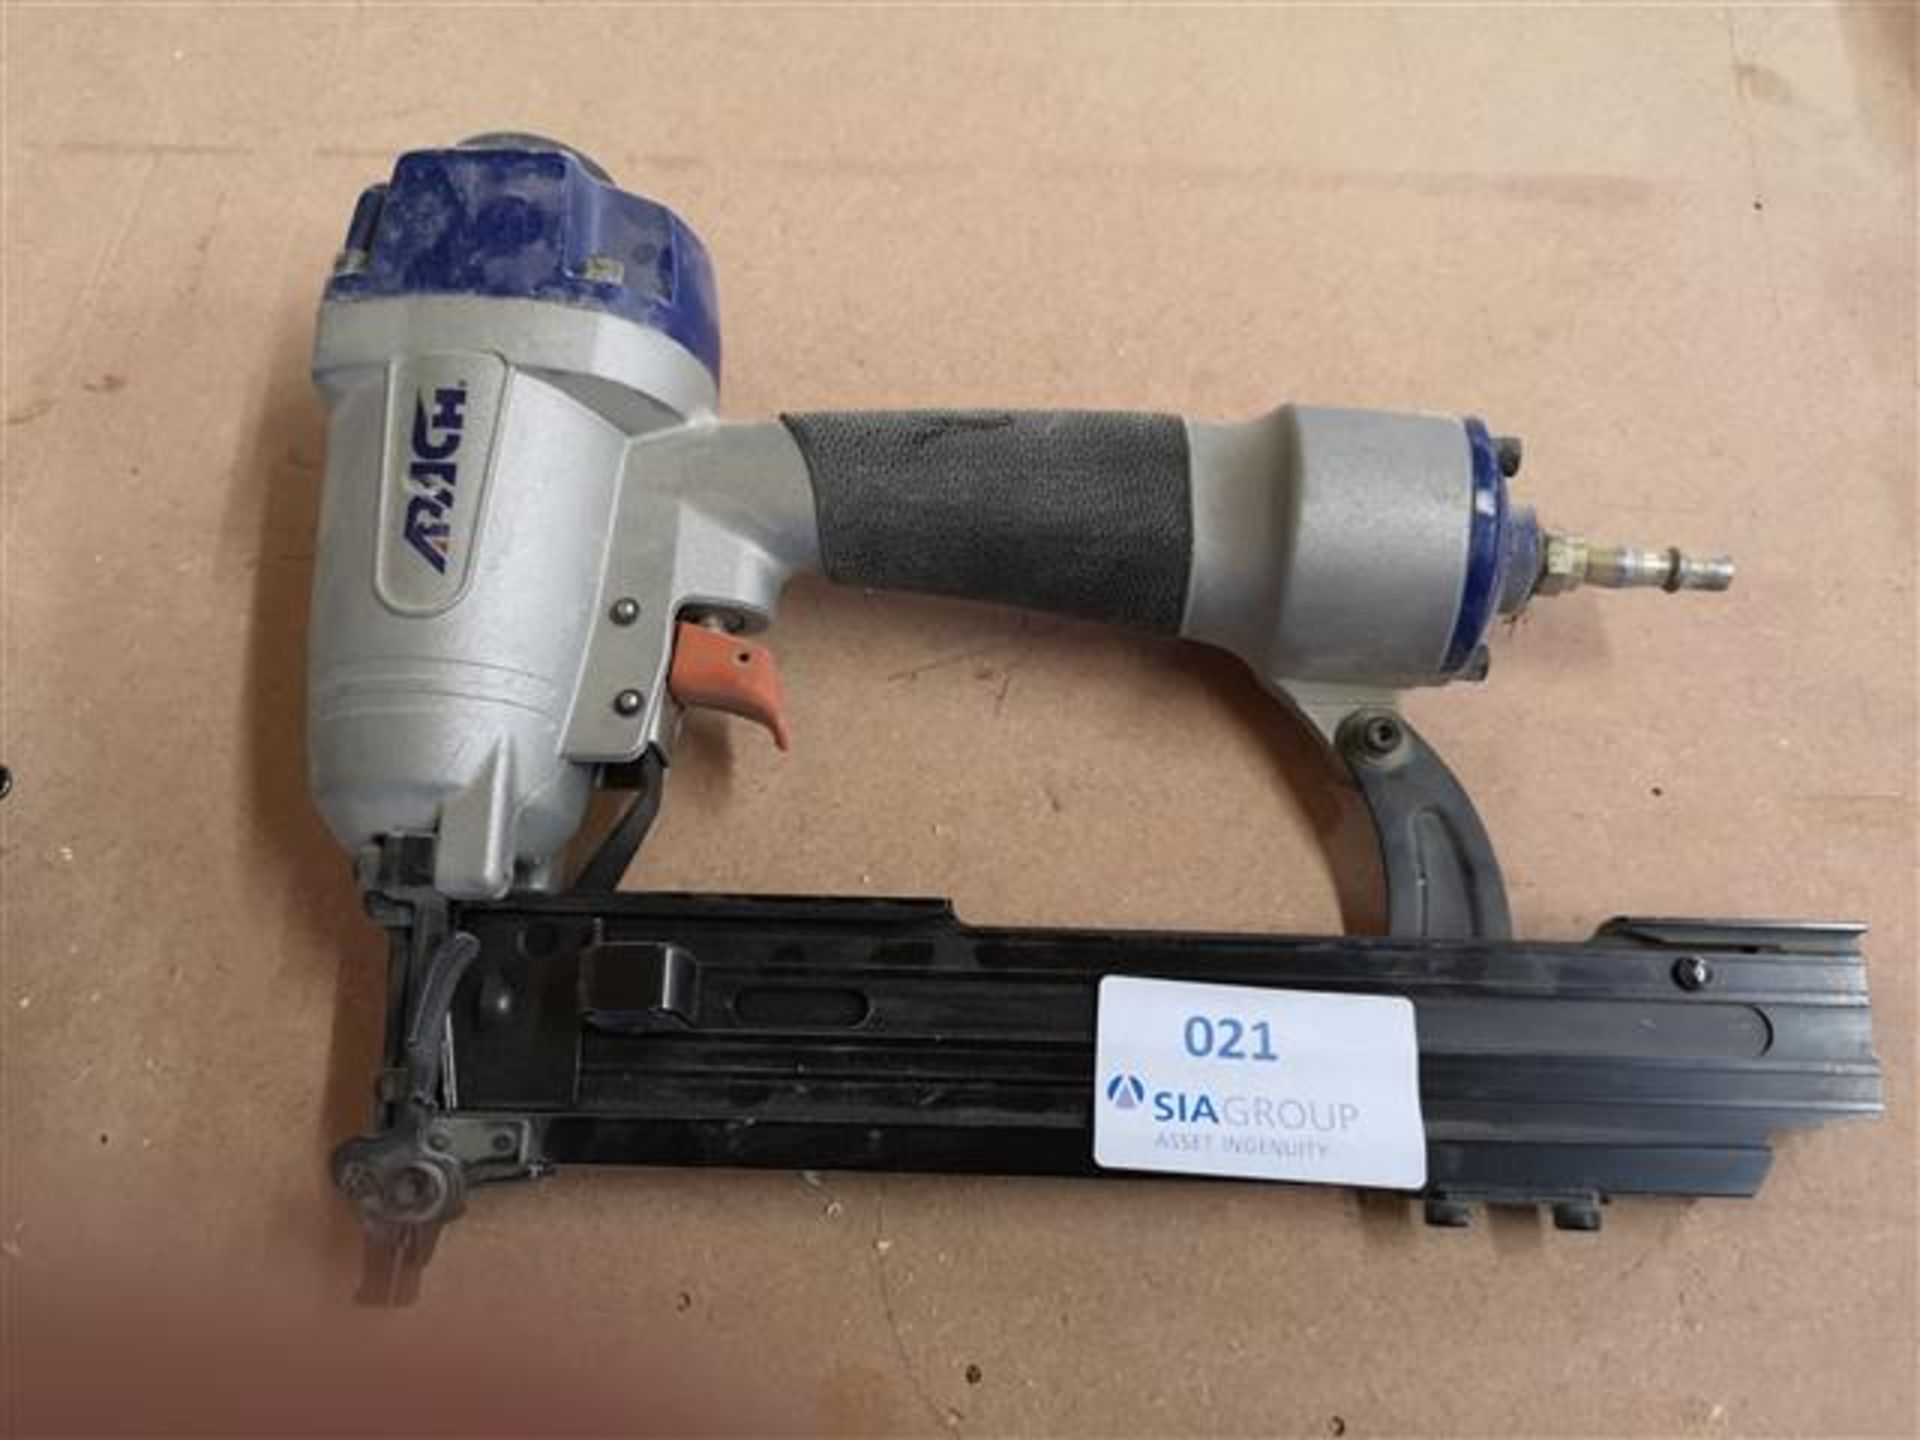 APACH LU-9040KT Industrial 18 Gauge Stapler